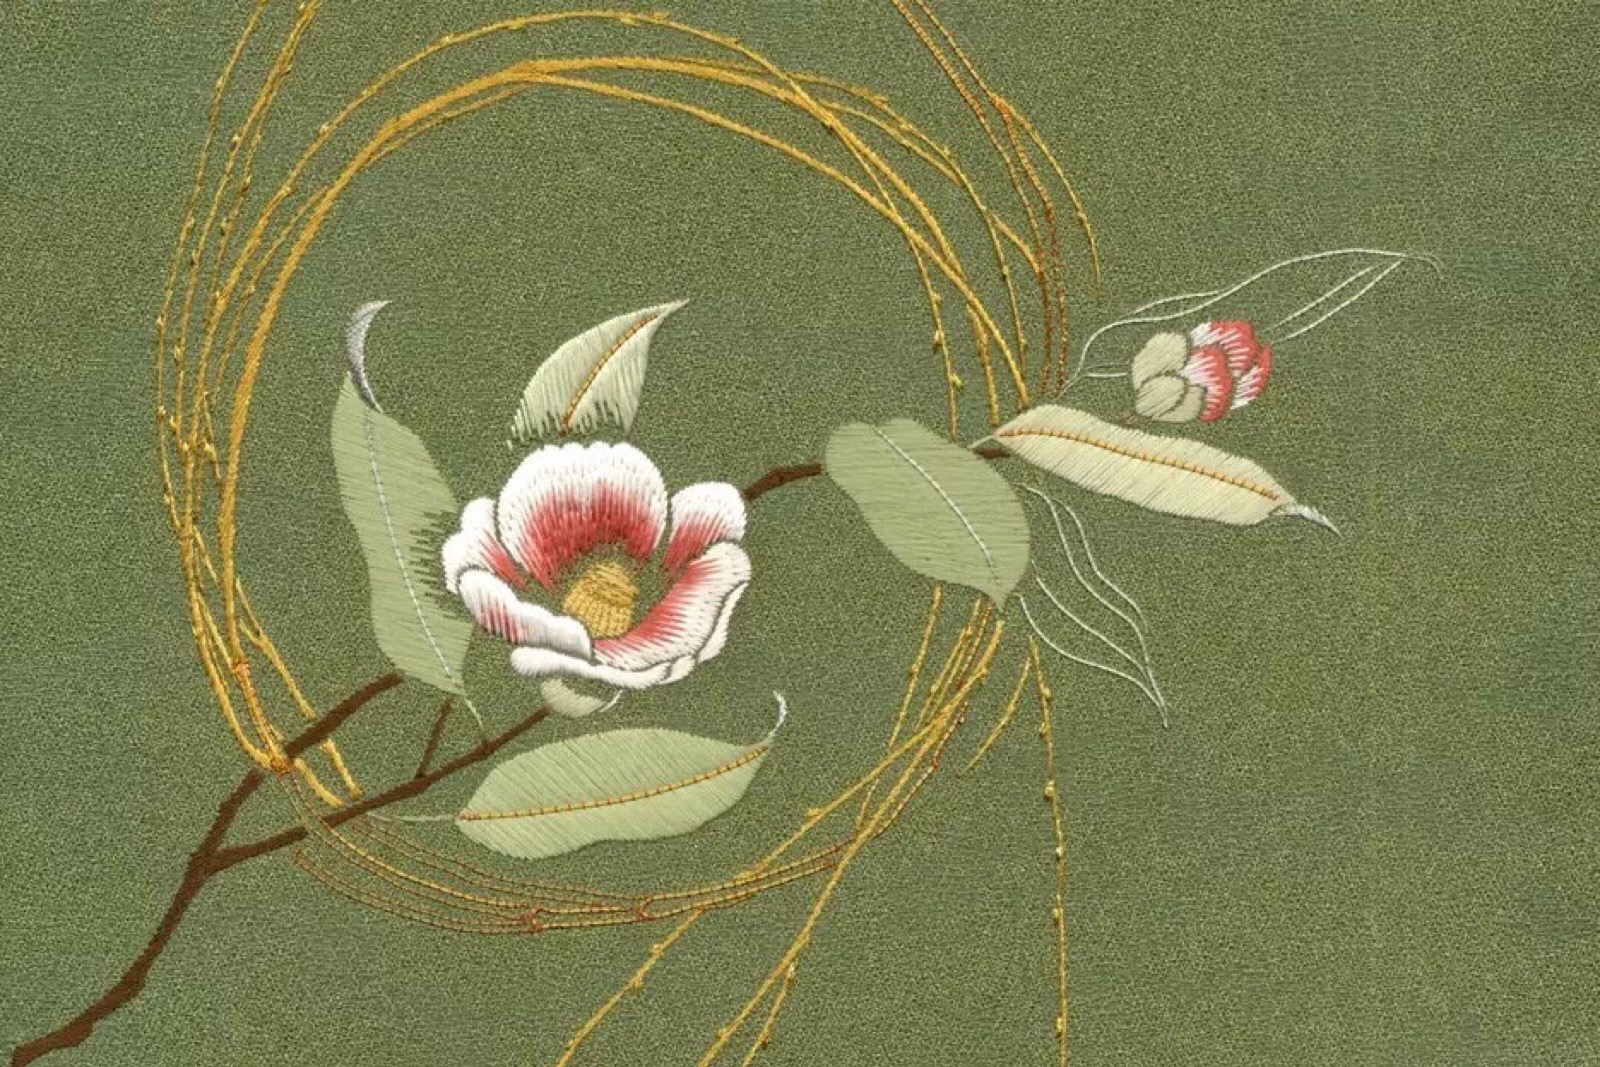 日式刺绣中最常用的技法,用平行的绣线表现图案,如图中椿花的叶子部分